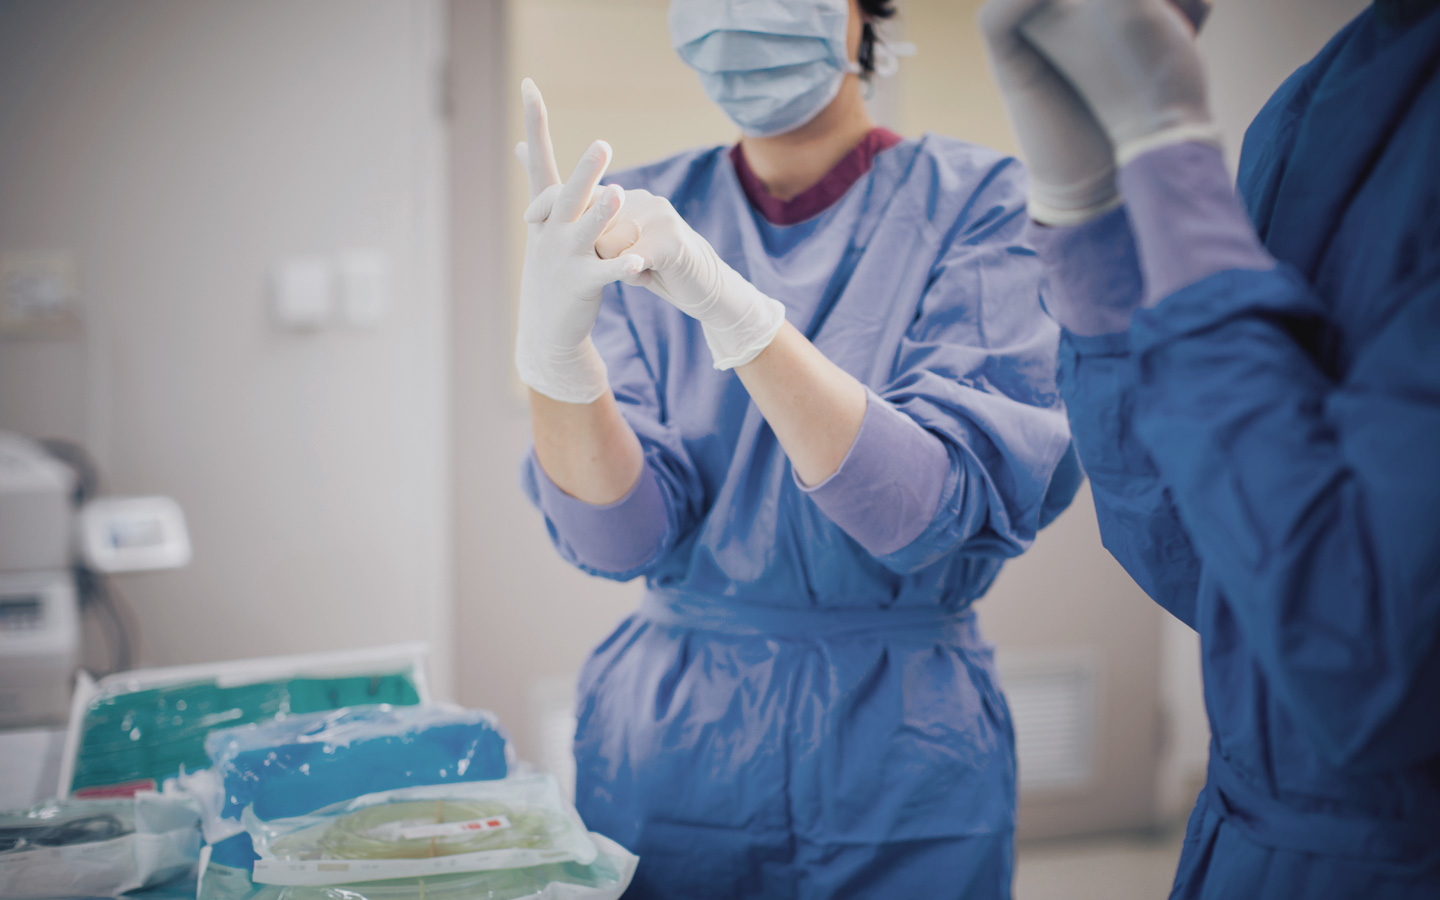 Foto: Krankenhauspersonal trägt Mundschutz, OP-Kleidung und sie ziehen sich Handschuhe an